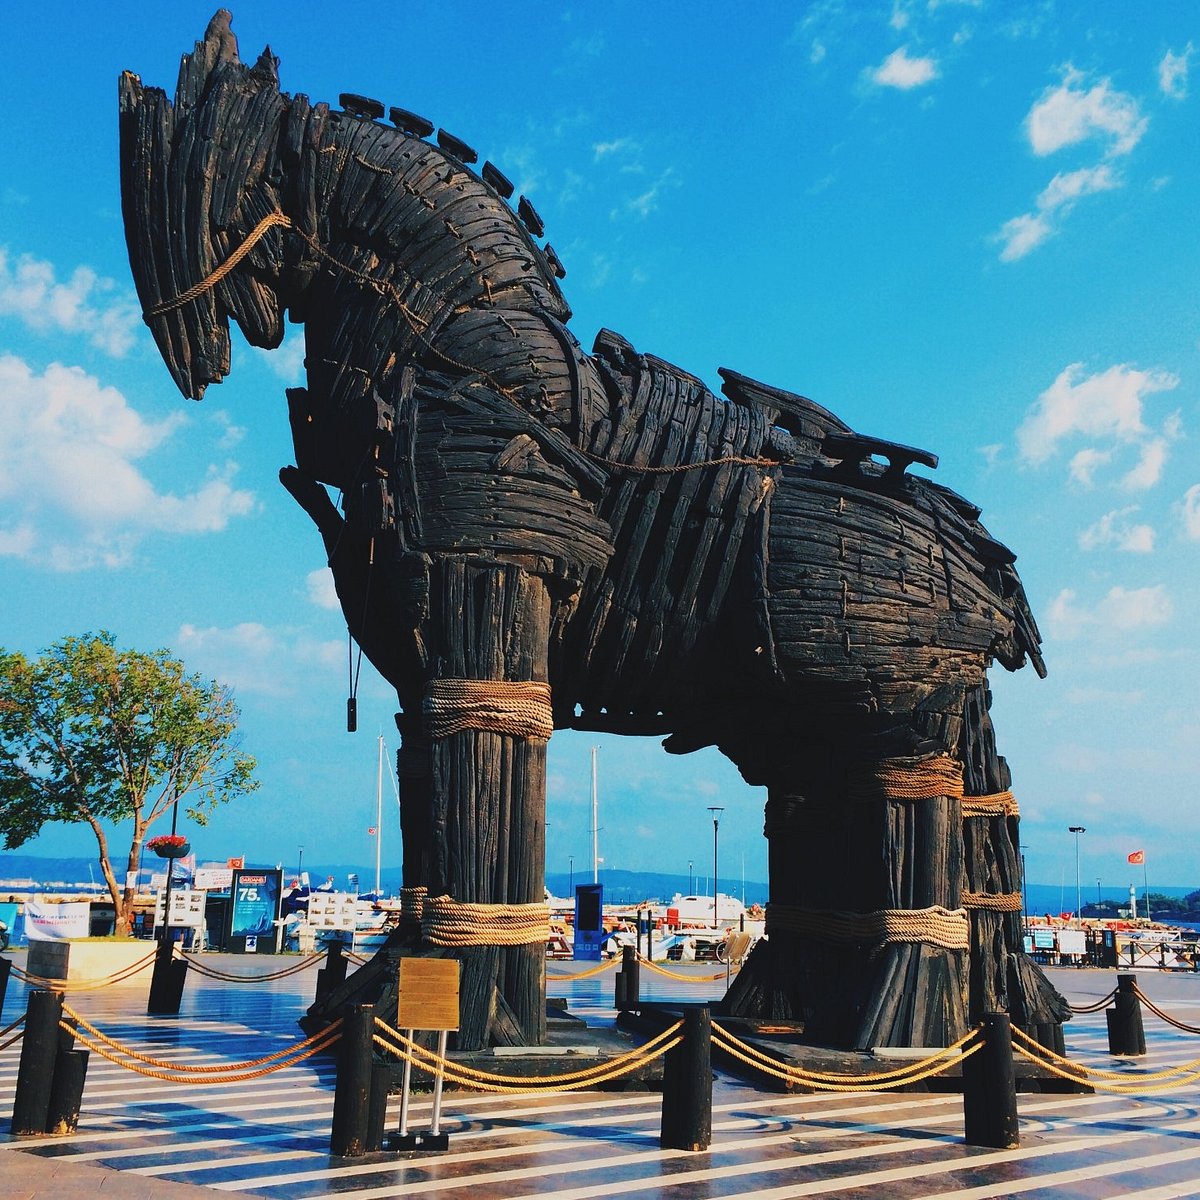 Canakkale Turquia 2019 Estátua Cavalo Tróia Canakkale Uma Manhã Verão —  Fotografia de Stock Editorial © Cavan #412911062